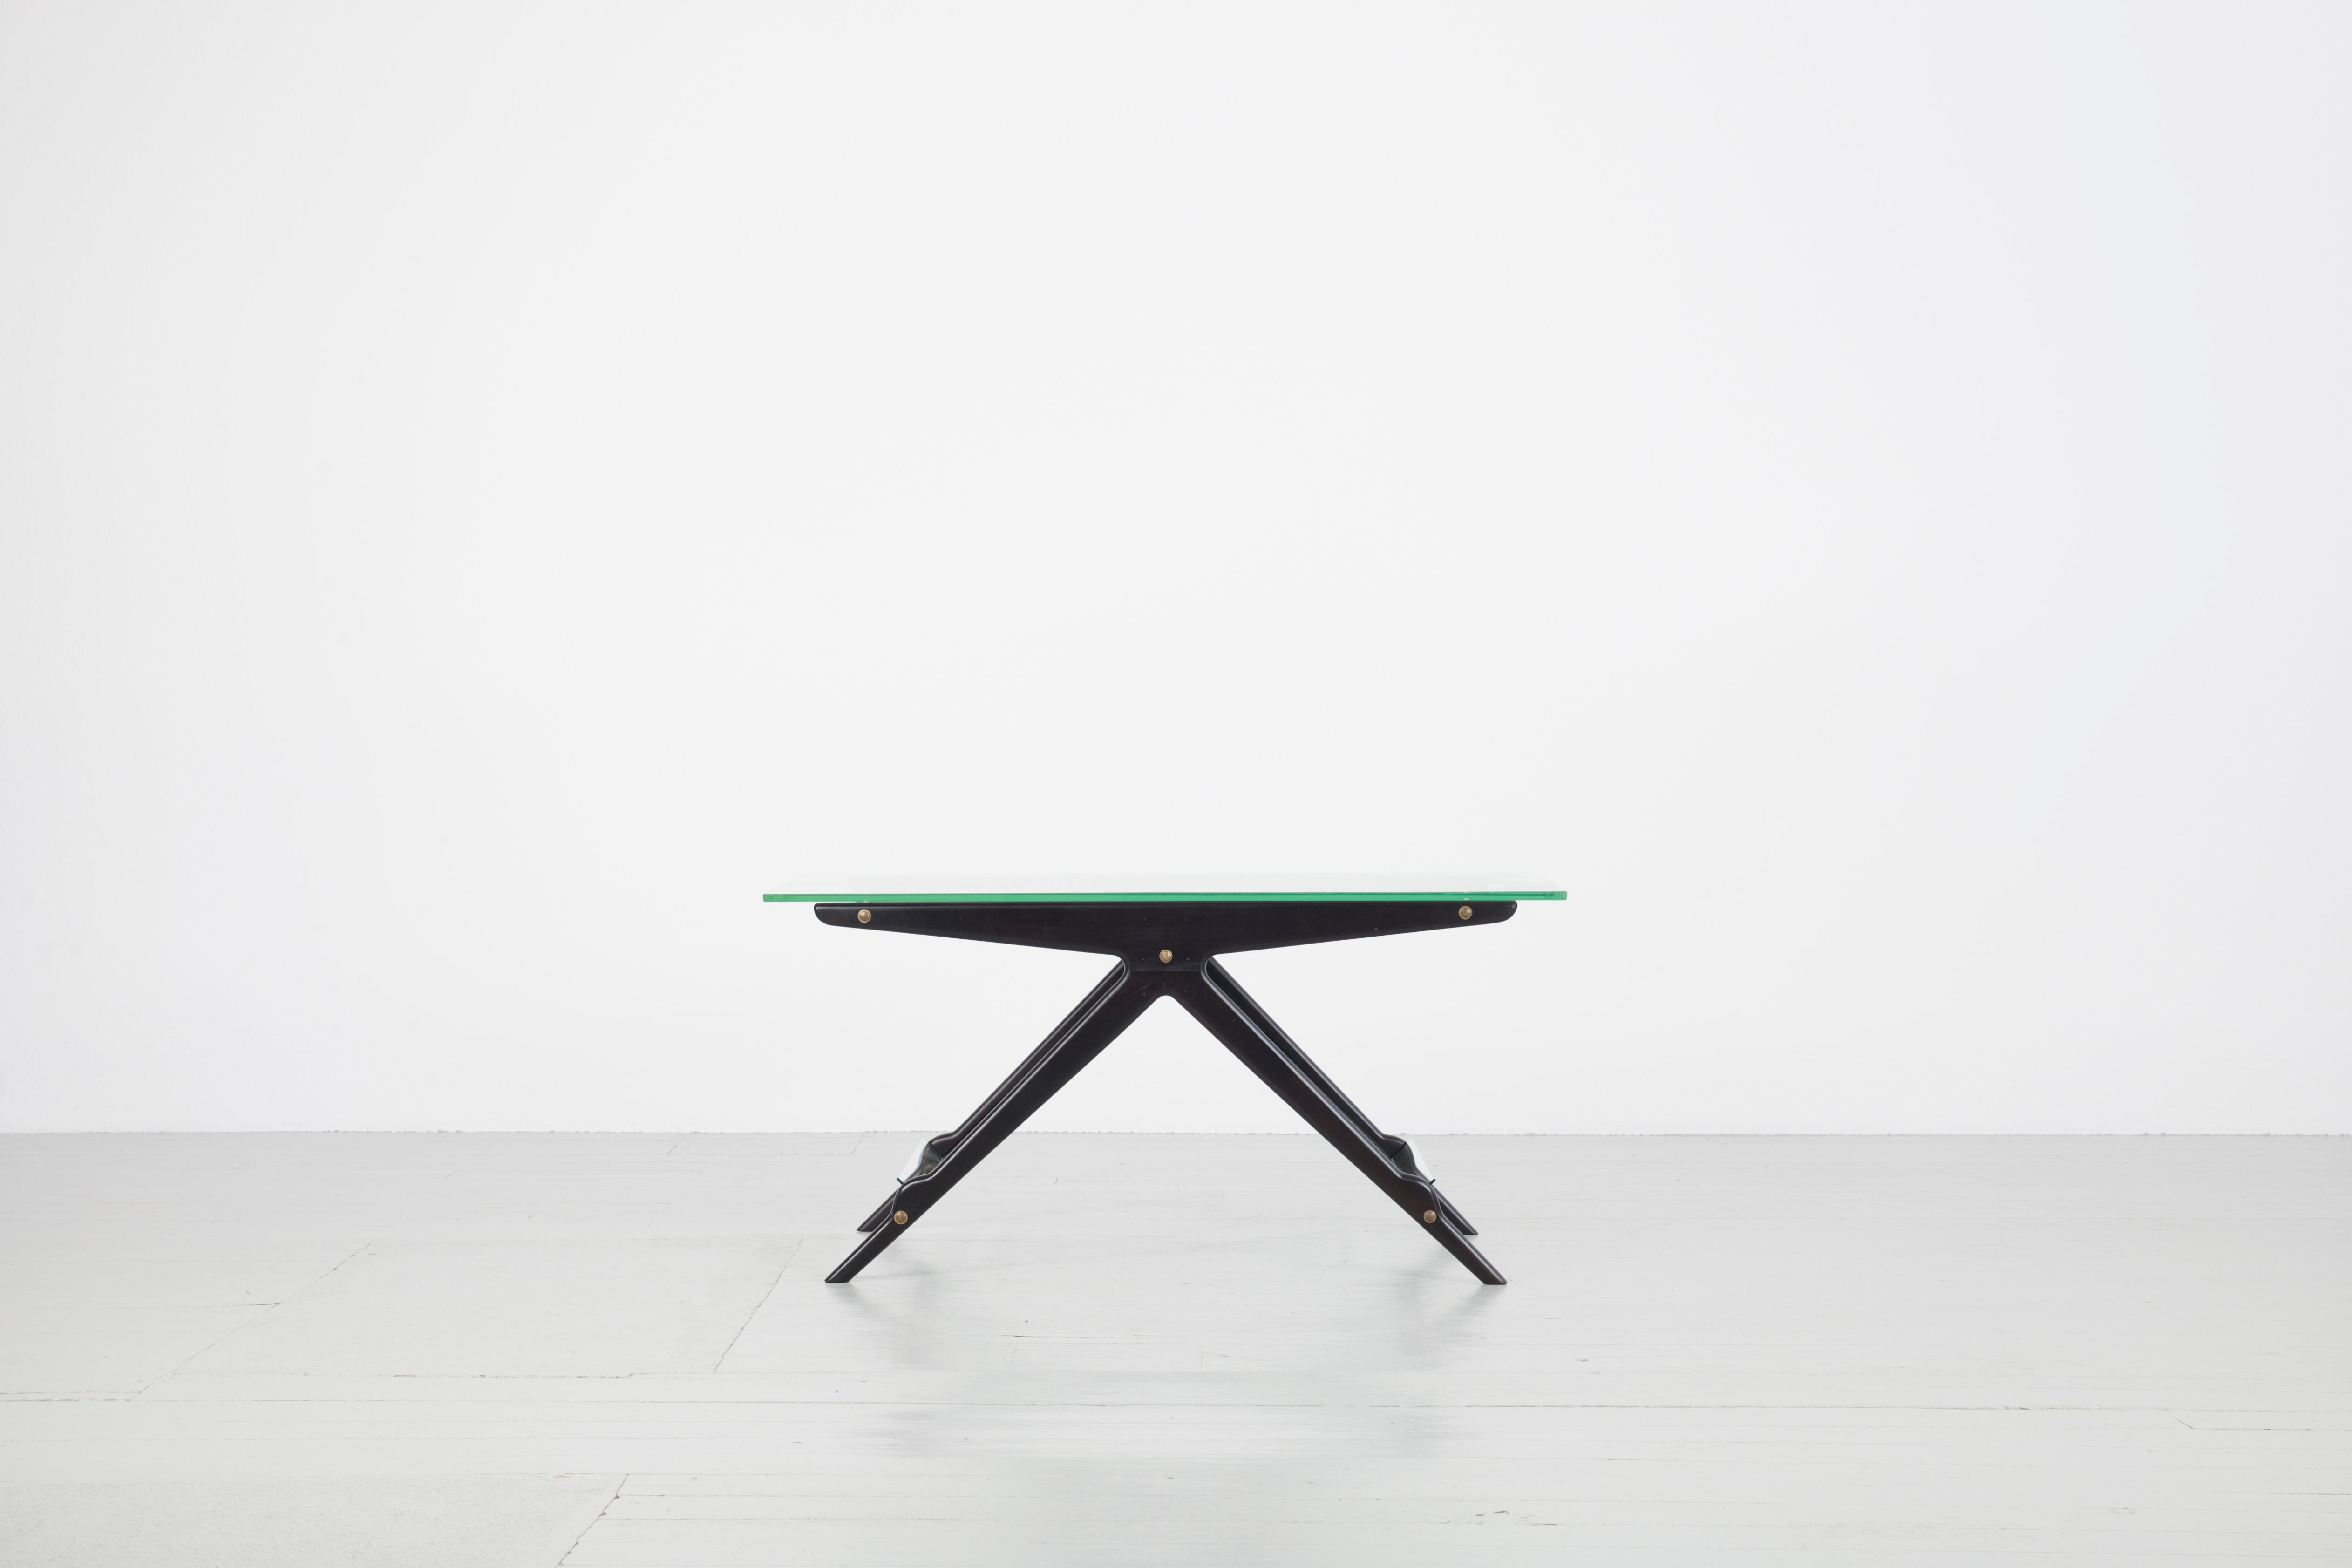 Cette table basse italienne a été conçue par Cesare Lacca dans les années 1950. Le cadre en bois laqué noir est construit en forme de T évasé. Entre les paires de pieds, des plaques de verre sont encastrées comme porte-revues. Le plateau de la table